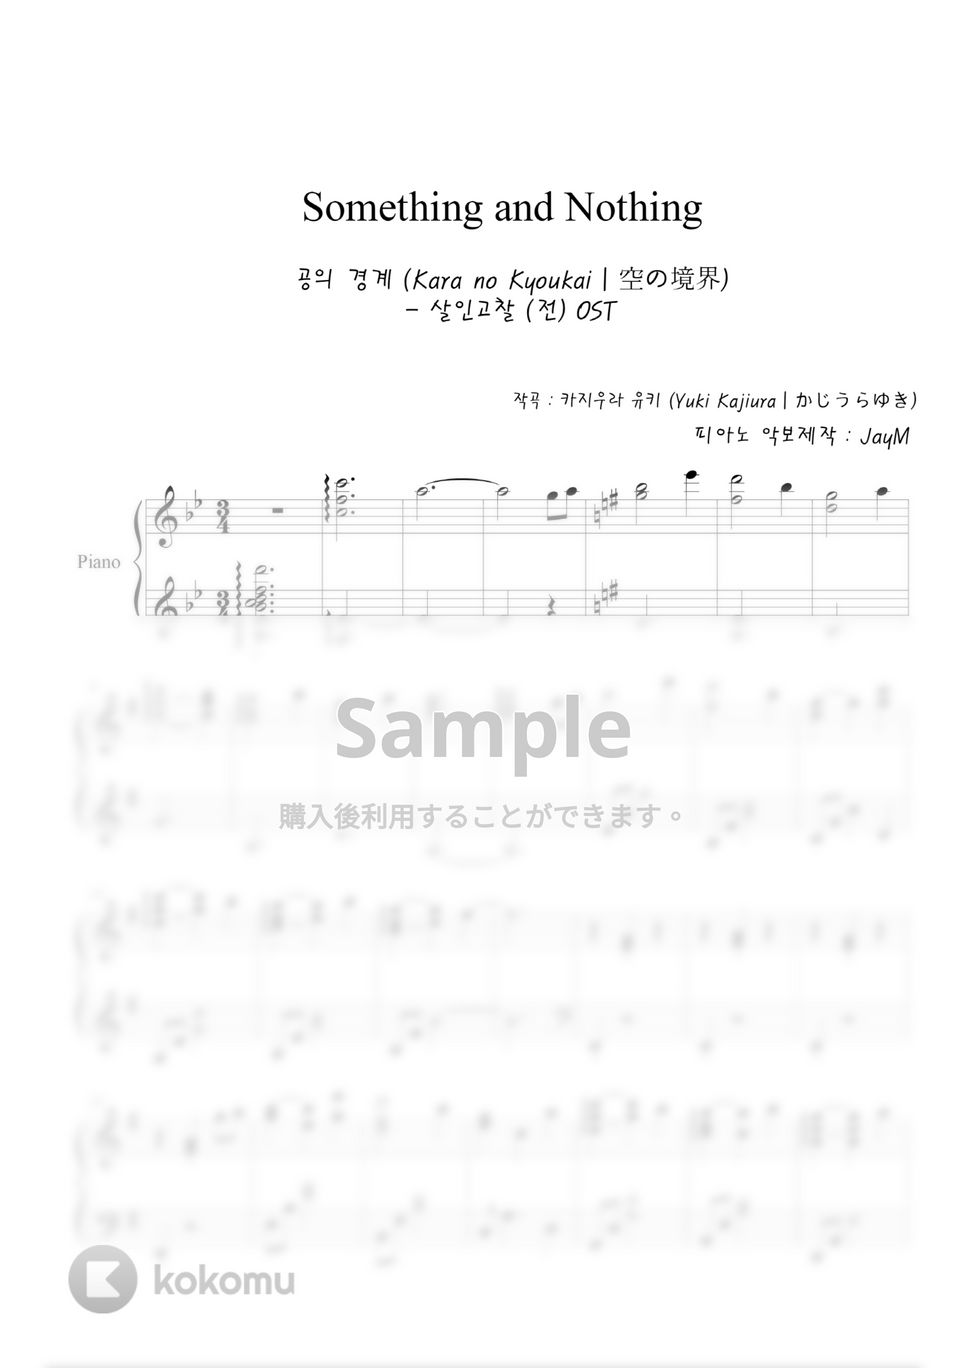 空の境界 - Something and Nothing by JayM